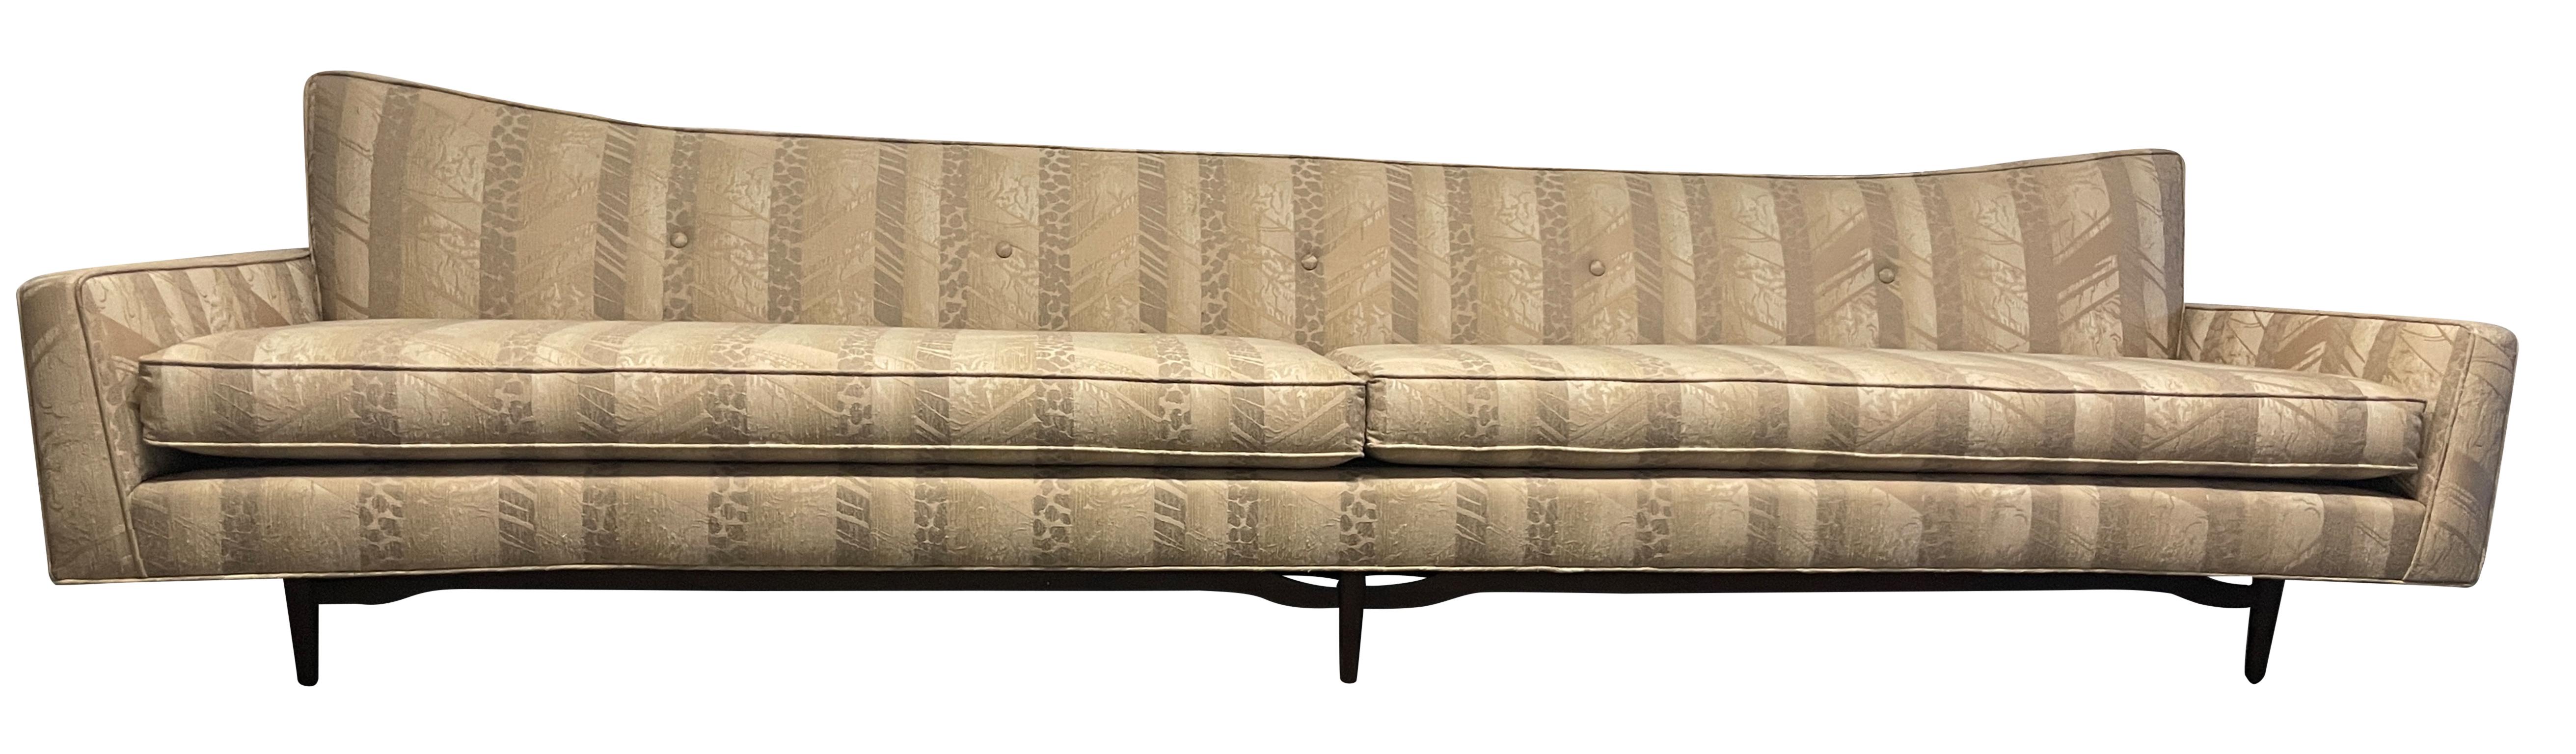 Modernes 10-Fuß-Sofa im Stil der Jahrhundertmitte von Paul McCobb. Das Sofa wurde schon einmal neu gepolstert - der Schaumstoff ist in gutem Zustand. Hat Massivholz verjüngt Beine unter Rahmen. Bereit für die Verwendung mit der aktuellen Polsterung